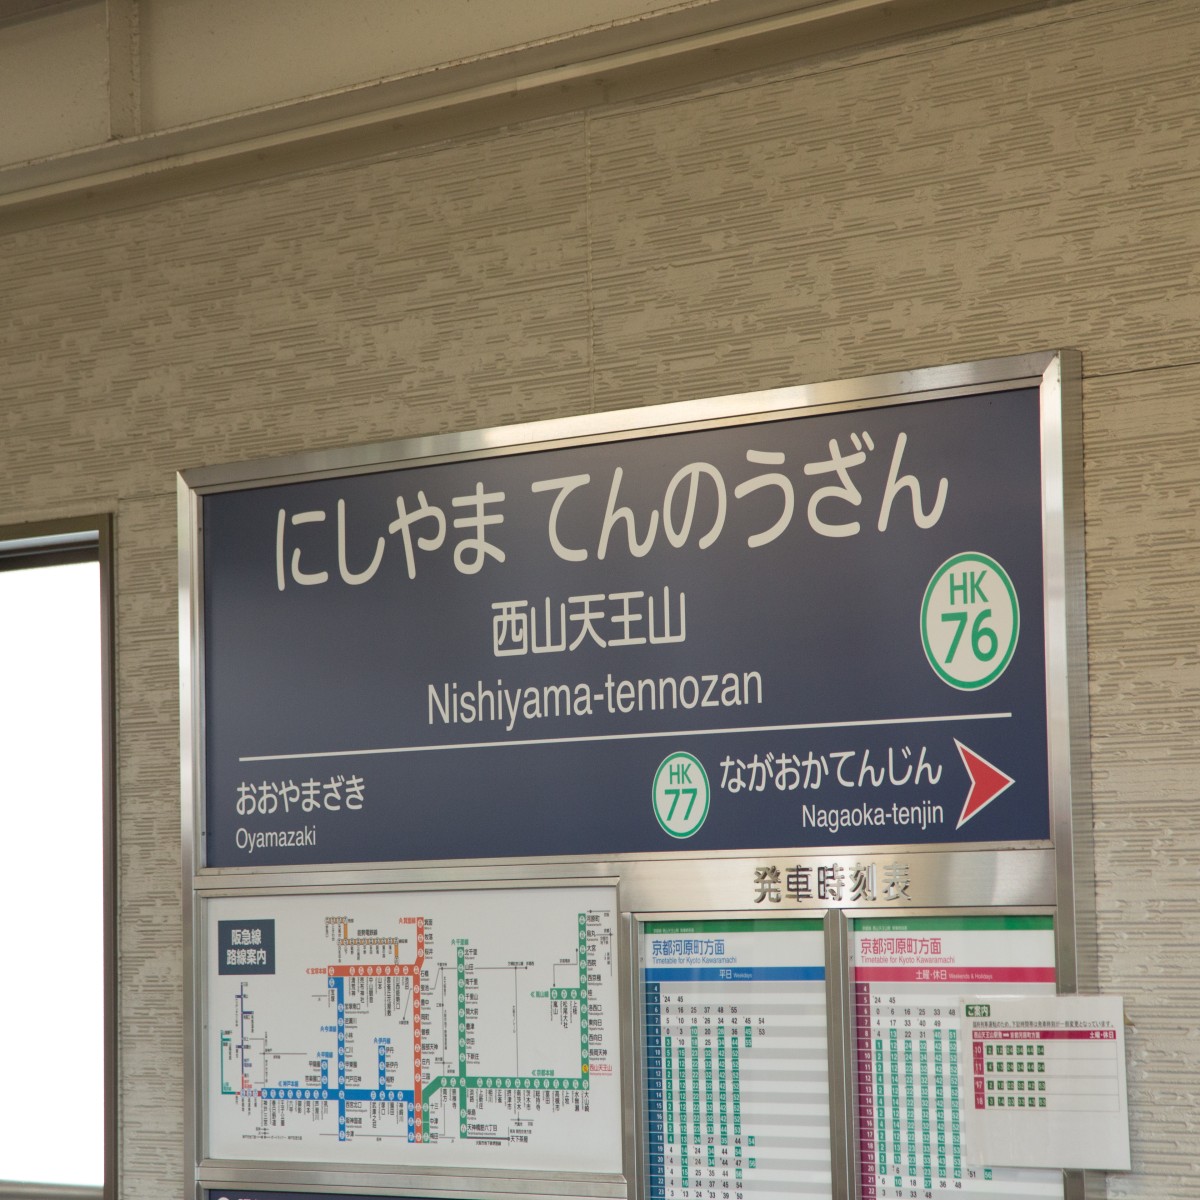 西山天王山駅で降りたけど、天下分け目の戦いには挑まないのアイキャッチ画像